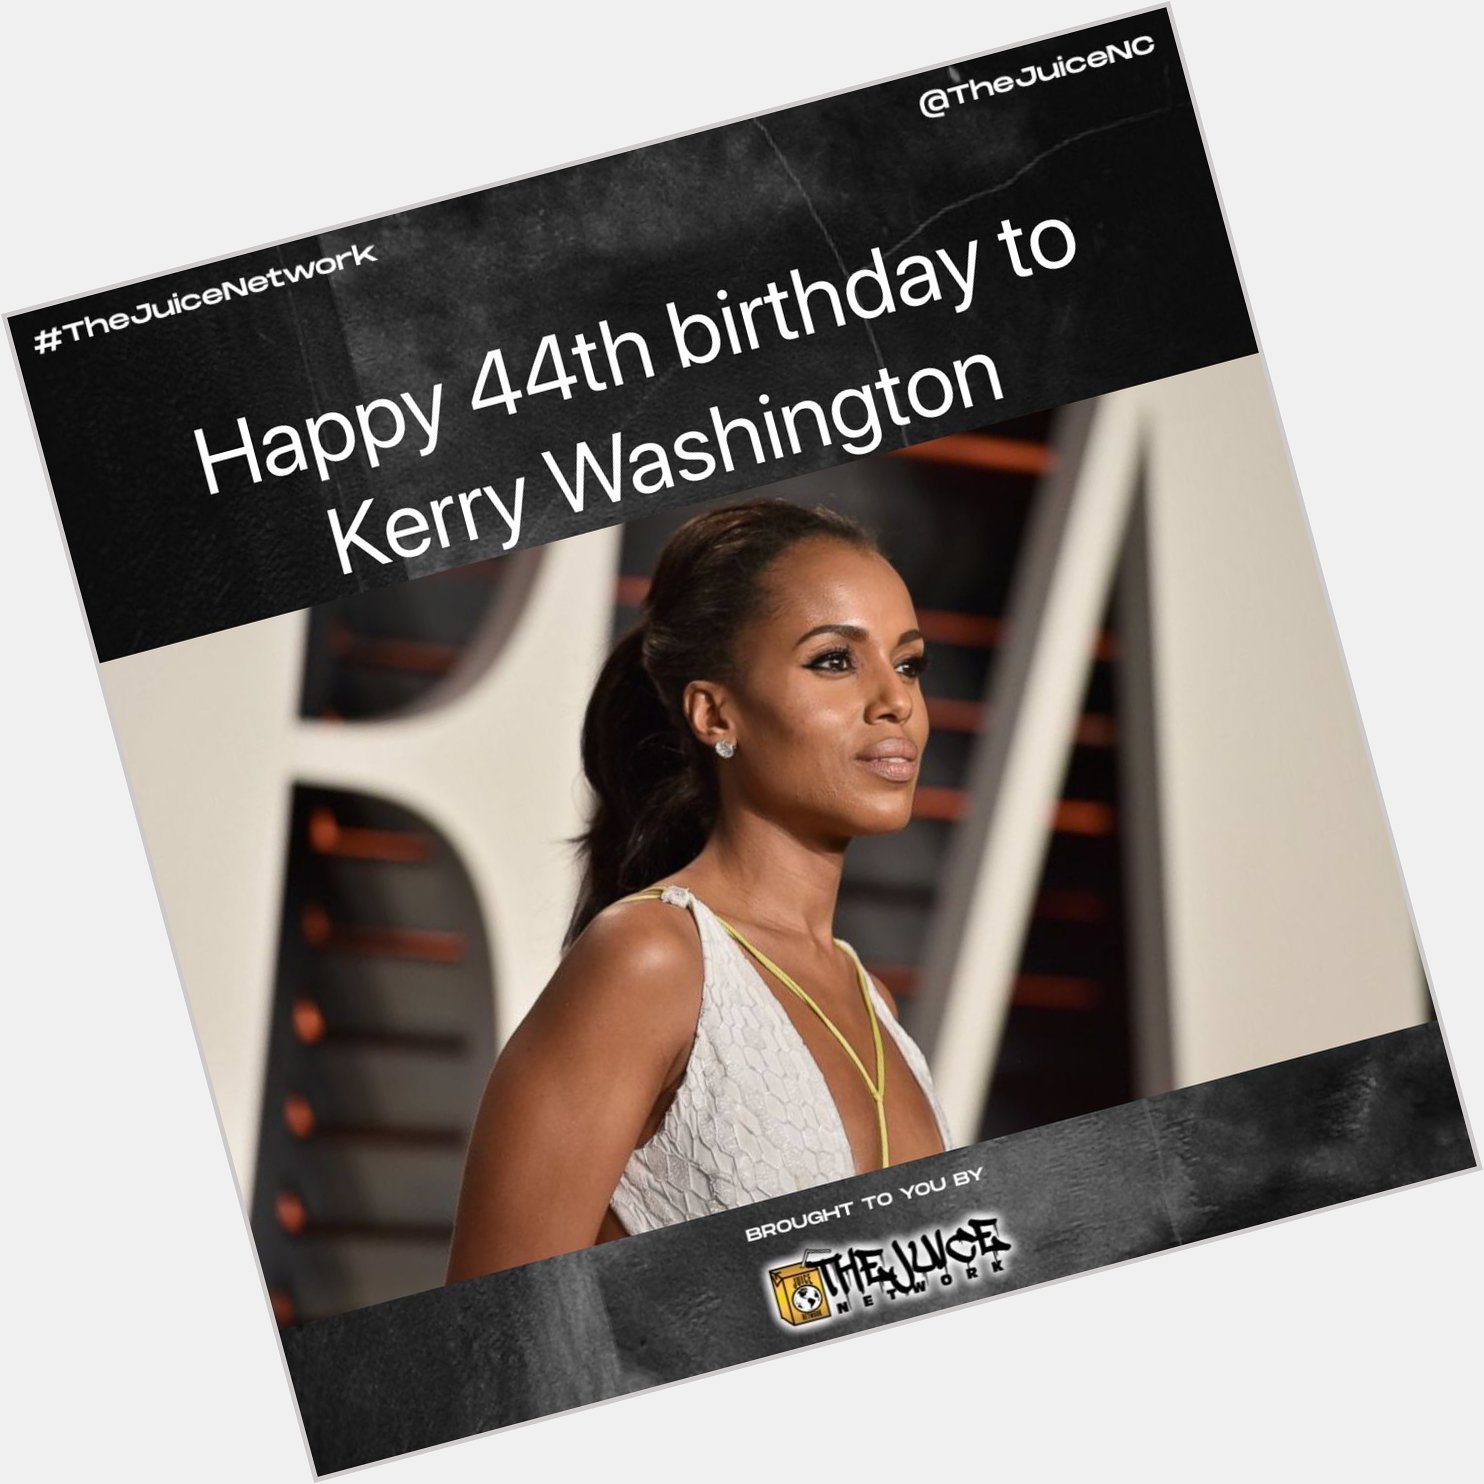 Happy 44th birthday to Kerry Washington!  Kerry 